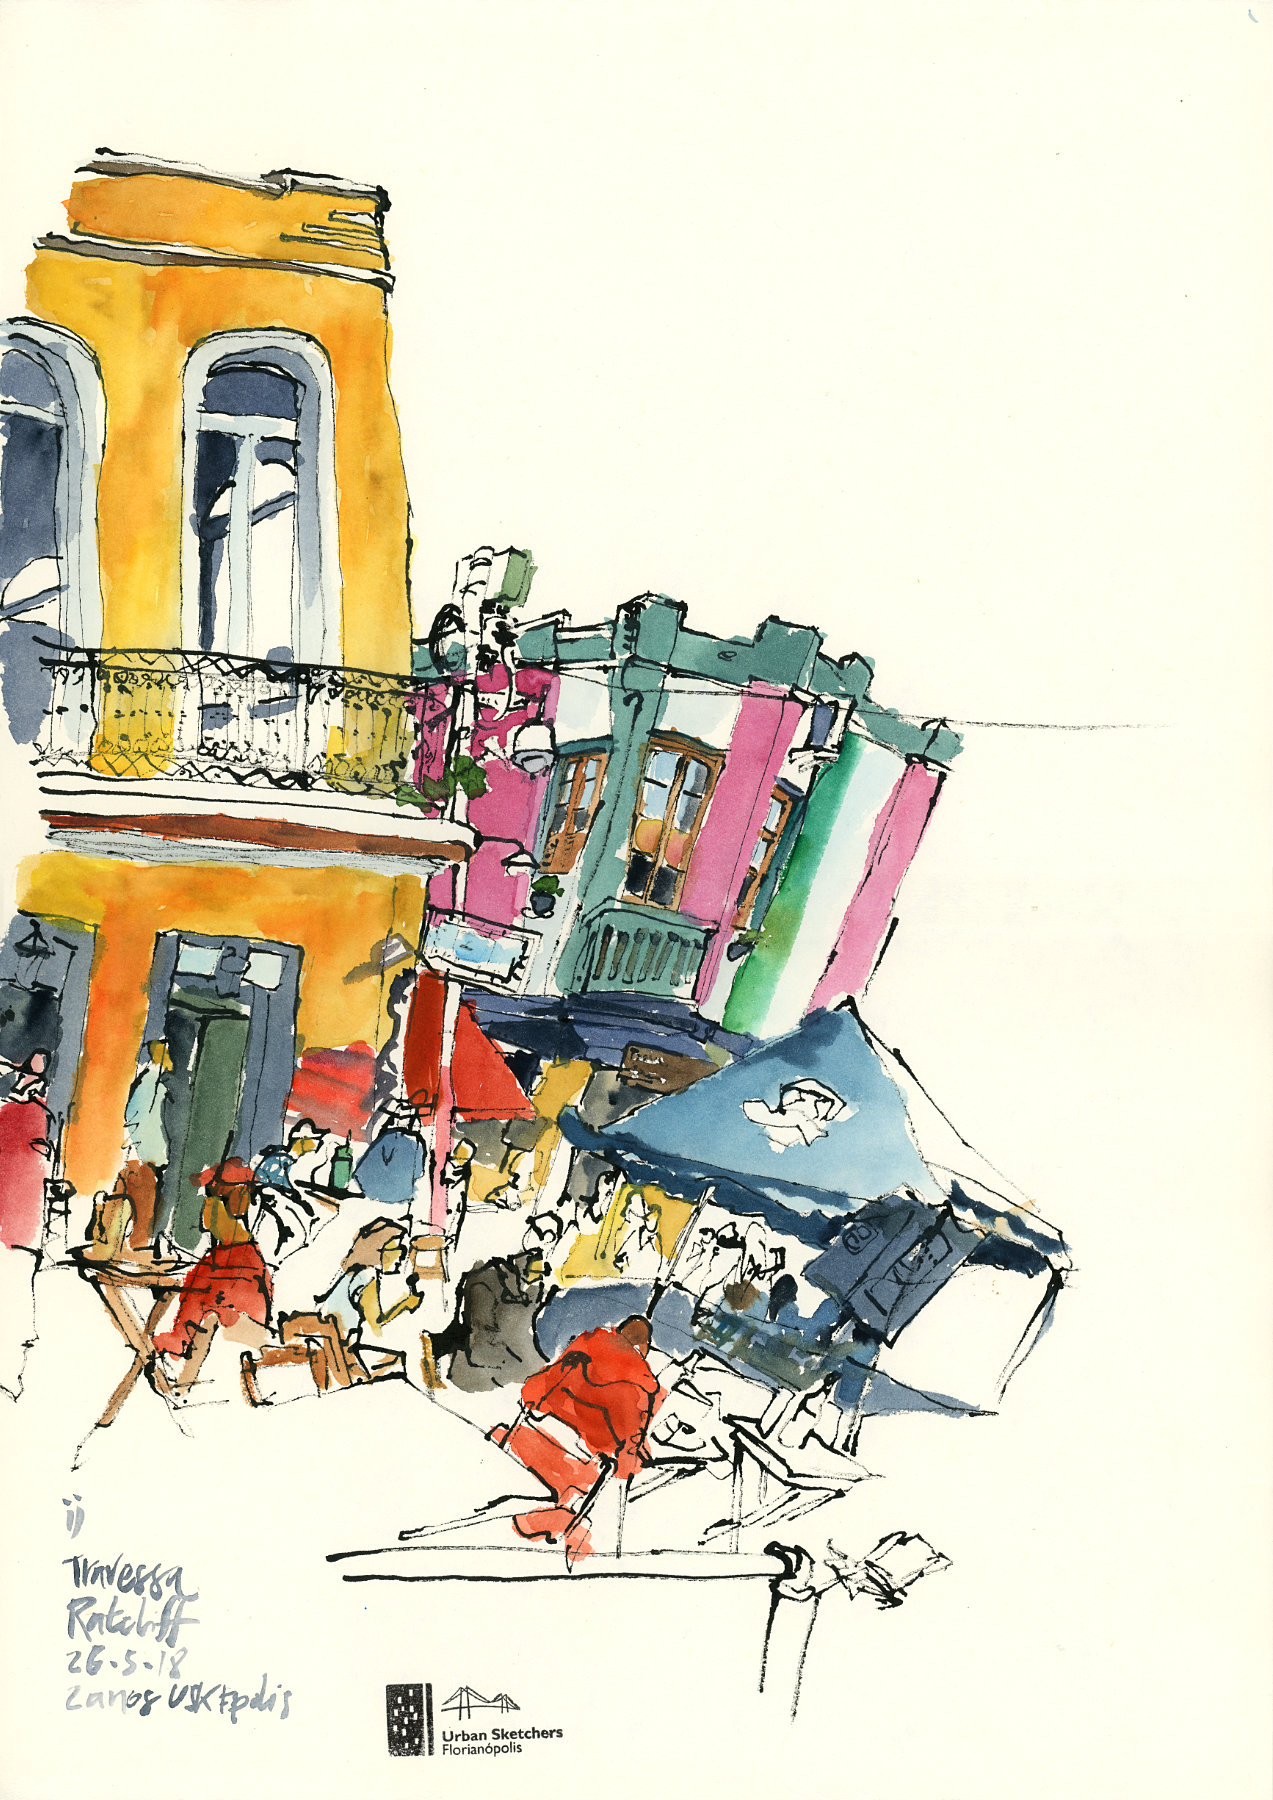 Desenho a nanquim e aquarela mostrando a esquina da travessa Ratcliff com dois casarões e clientes sentados nas mesas da rua em primeiro plano